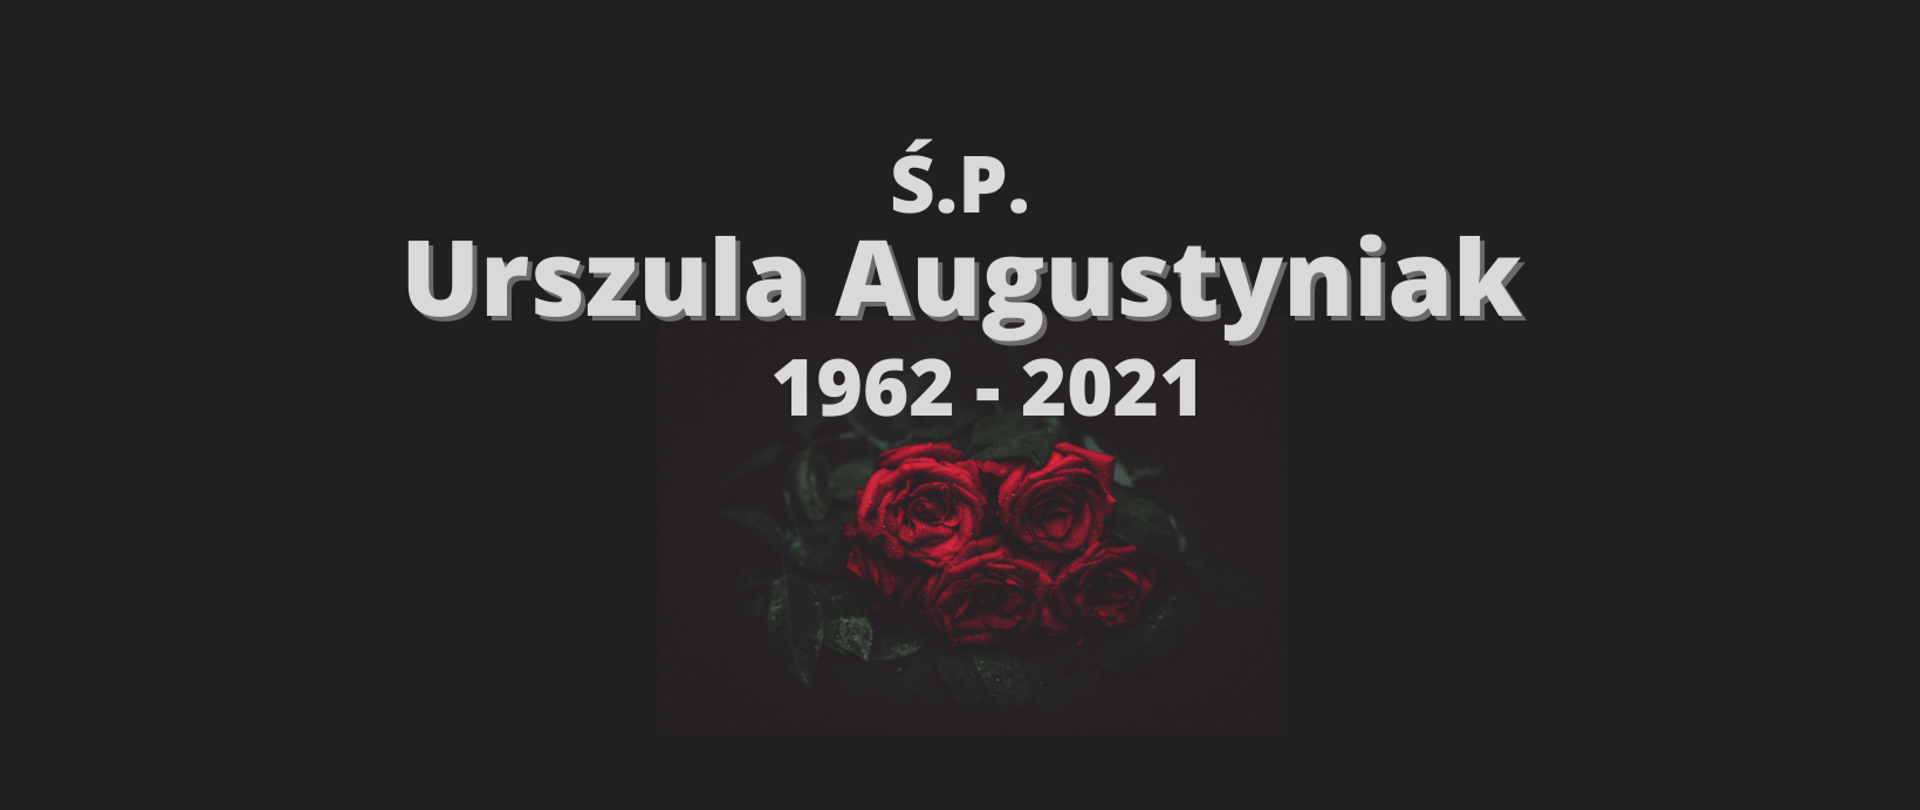 Czerwone róże na czarnym tle i biały napis: Ś.P. Urszula Augustyniak 1962-2021